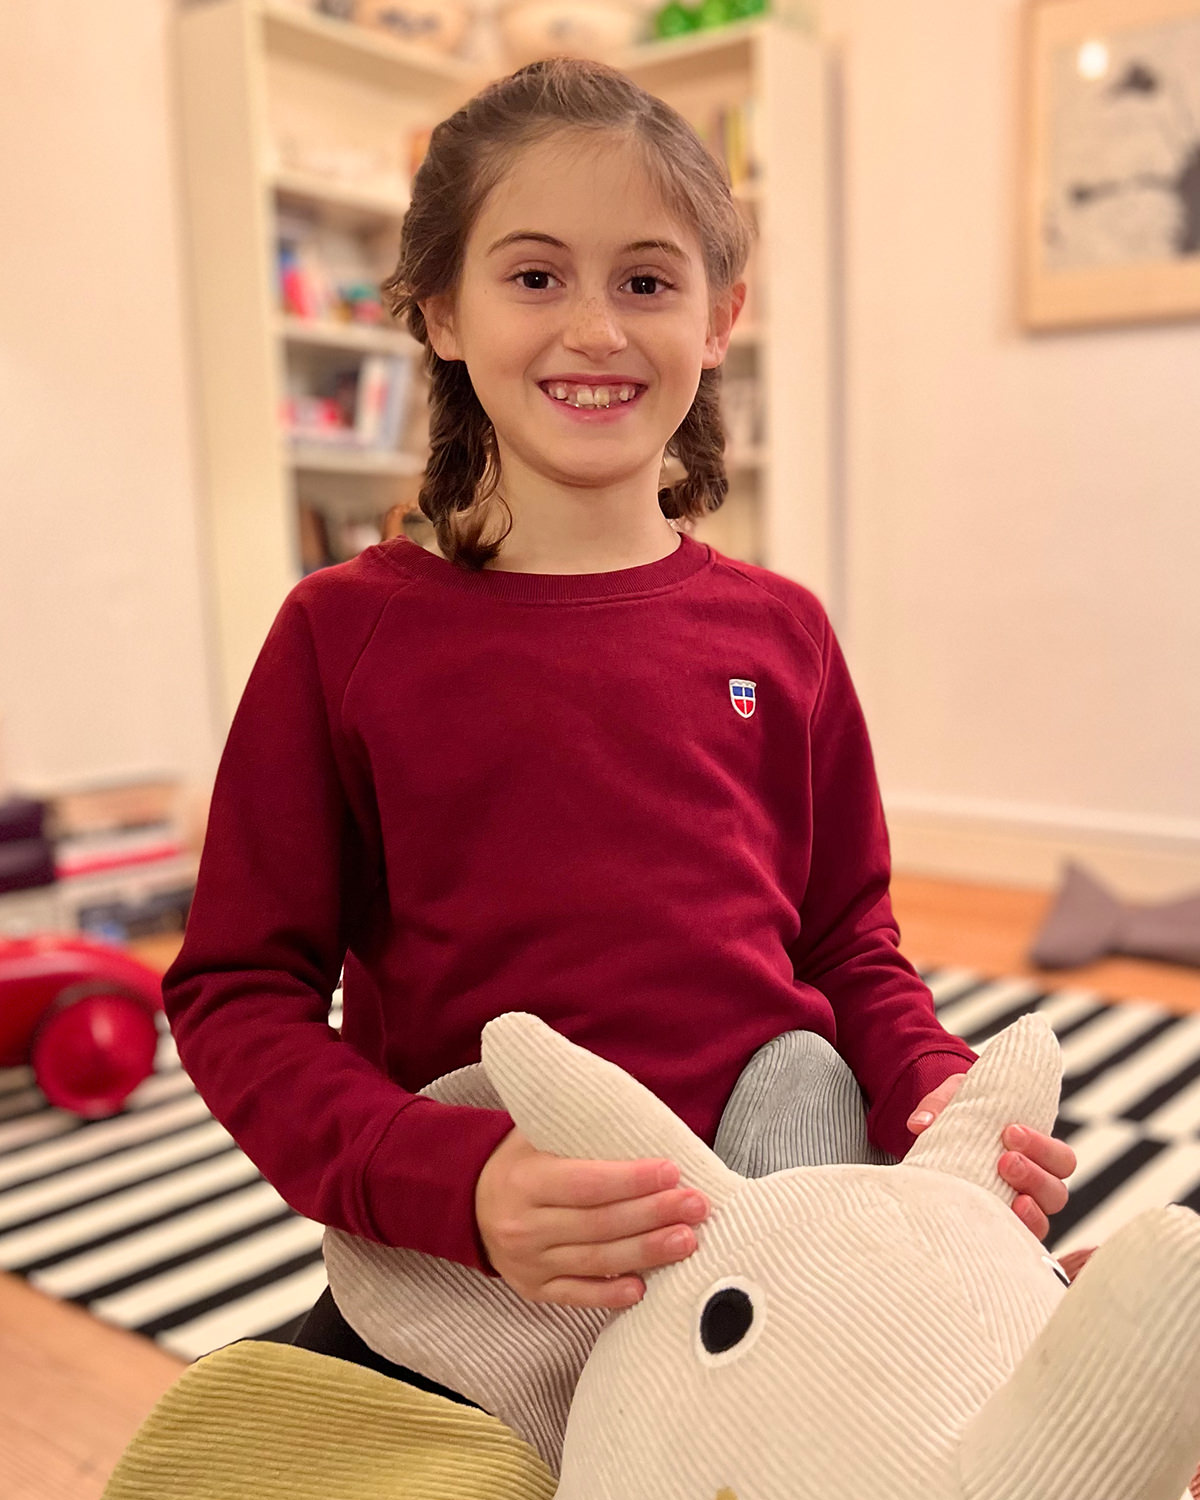 Leni ist 8 Jahre alt. Bordeaux ist einfach ihre Farbe. Sweatshirt Tilda für Mädchen mit aufgesticktem Saarland-Wappen steht ihr perfekt.